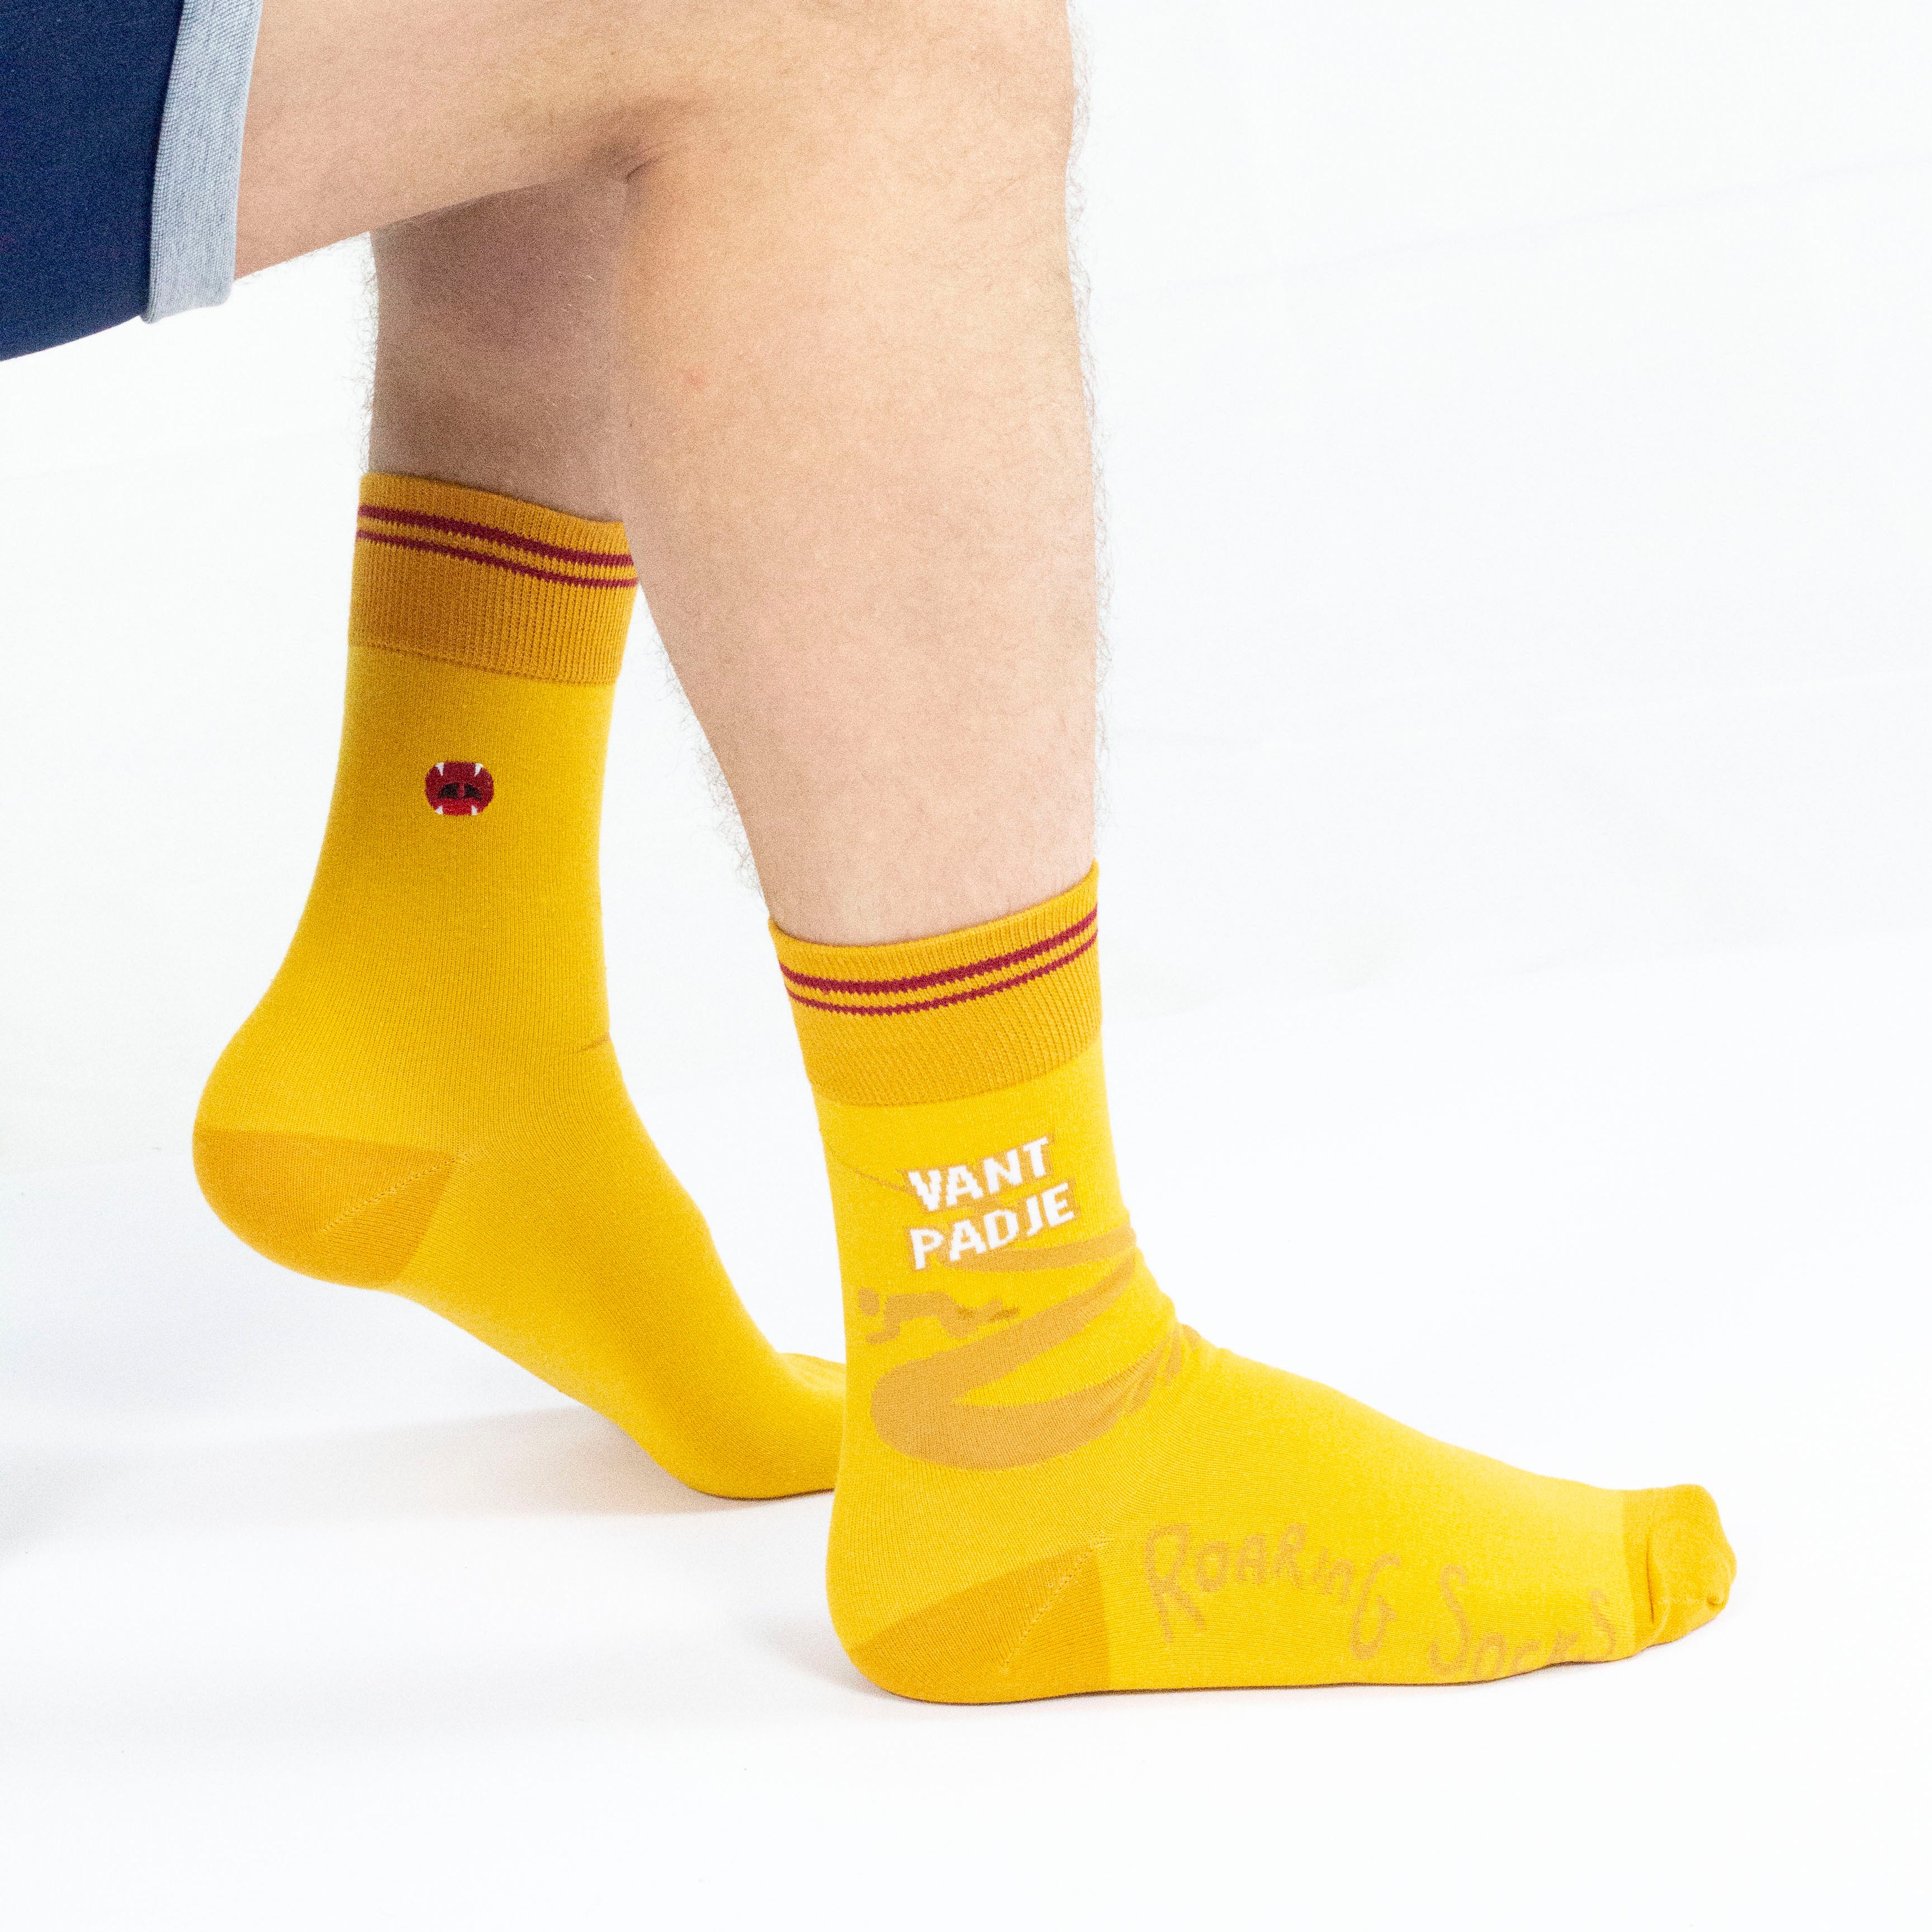 Roaring Socks - Sokken – Van’t padje - Geel – Scheef gaan – Zuipen – Drinken – Alcohol - Bier - Café - Katoen - Leuk - Grappig - Vrolijk - Fashion – Cadeau